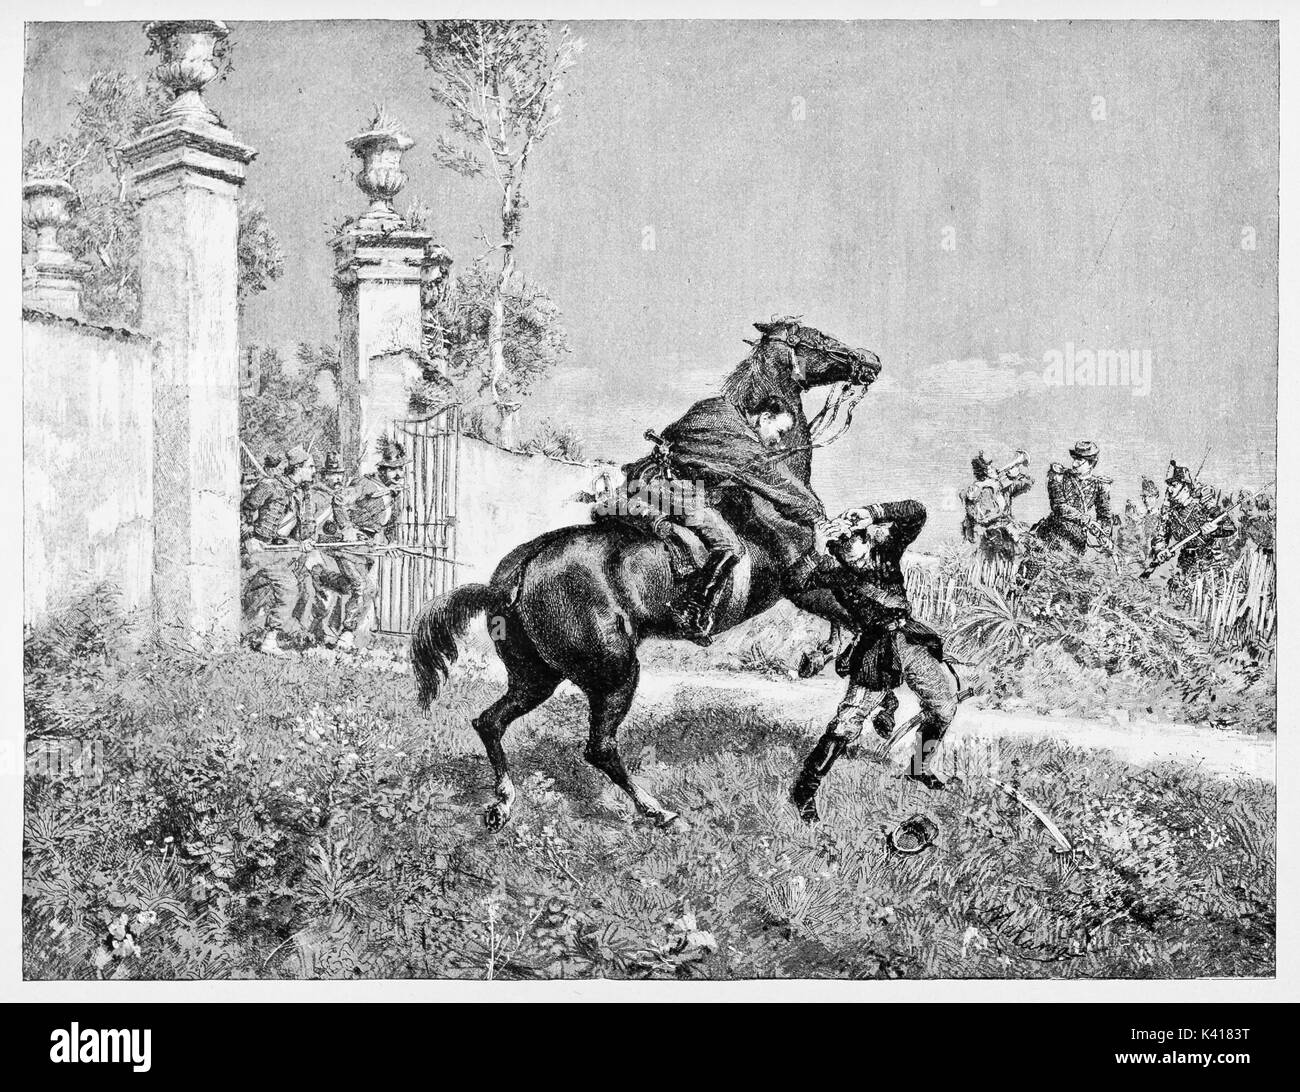 Alte Soldat auf einem Pferd Angriffe der Gegner. Italienischer patriot Nino Bixio verhaften Großen Picard französischen Offizier. Durch E.Matania auf Garibaldi e i Suoi Tempi Mailand Italien 1884 veröffentlicht. Stockfoto